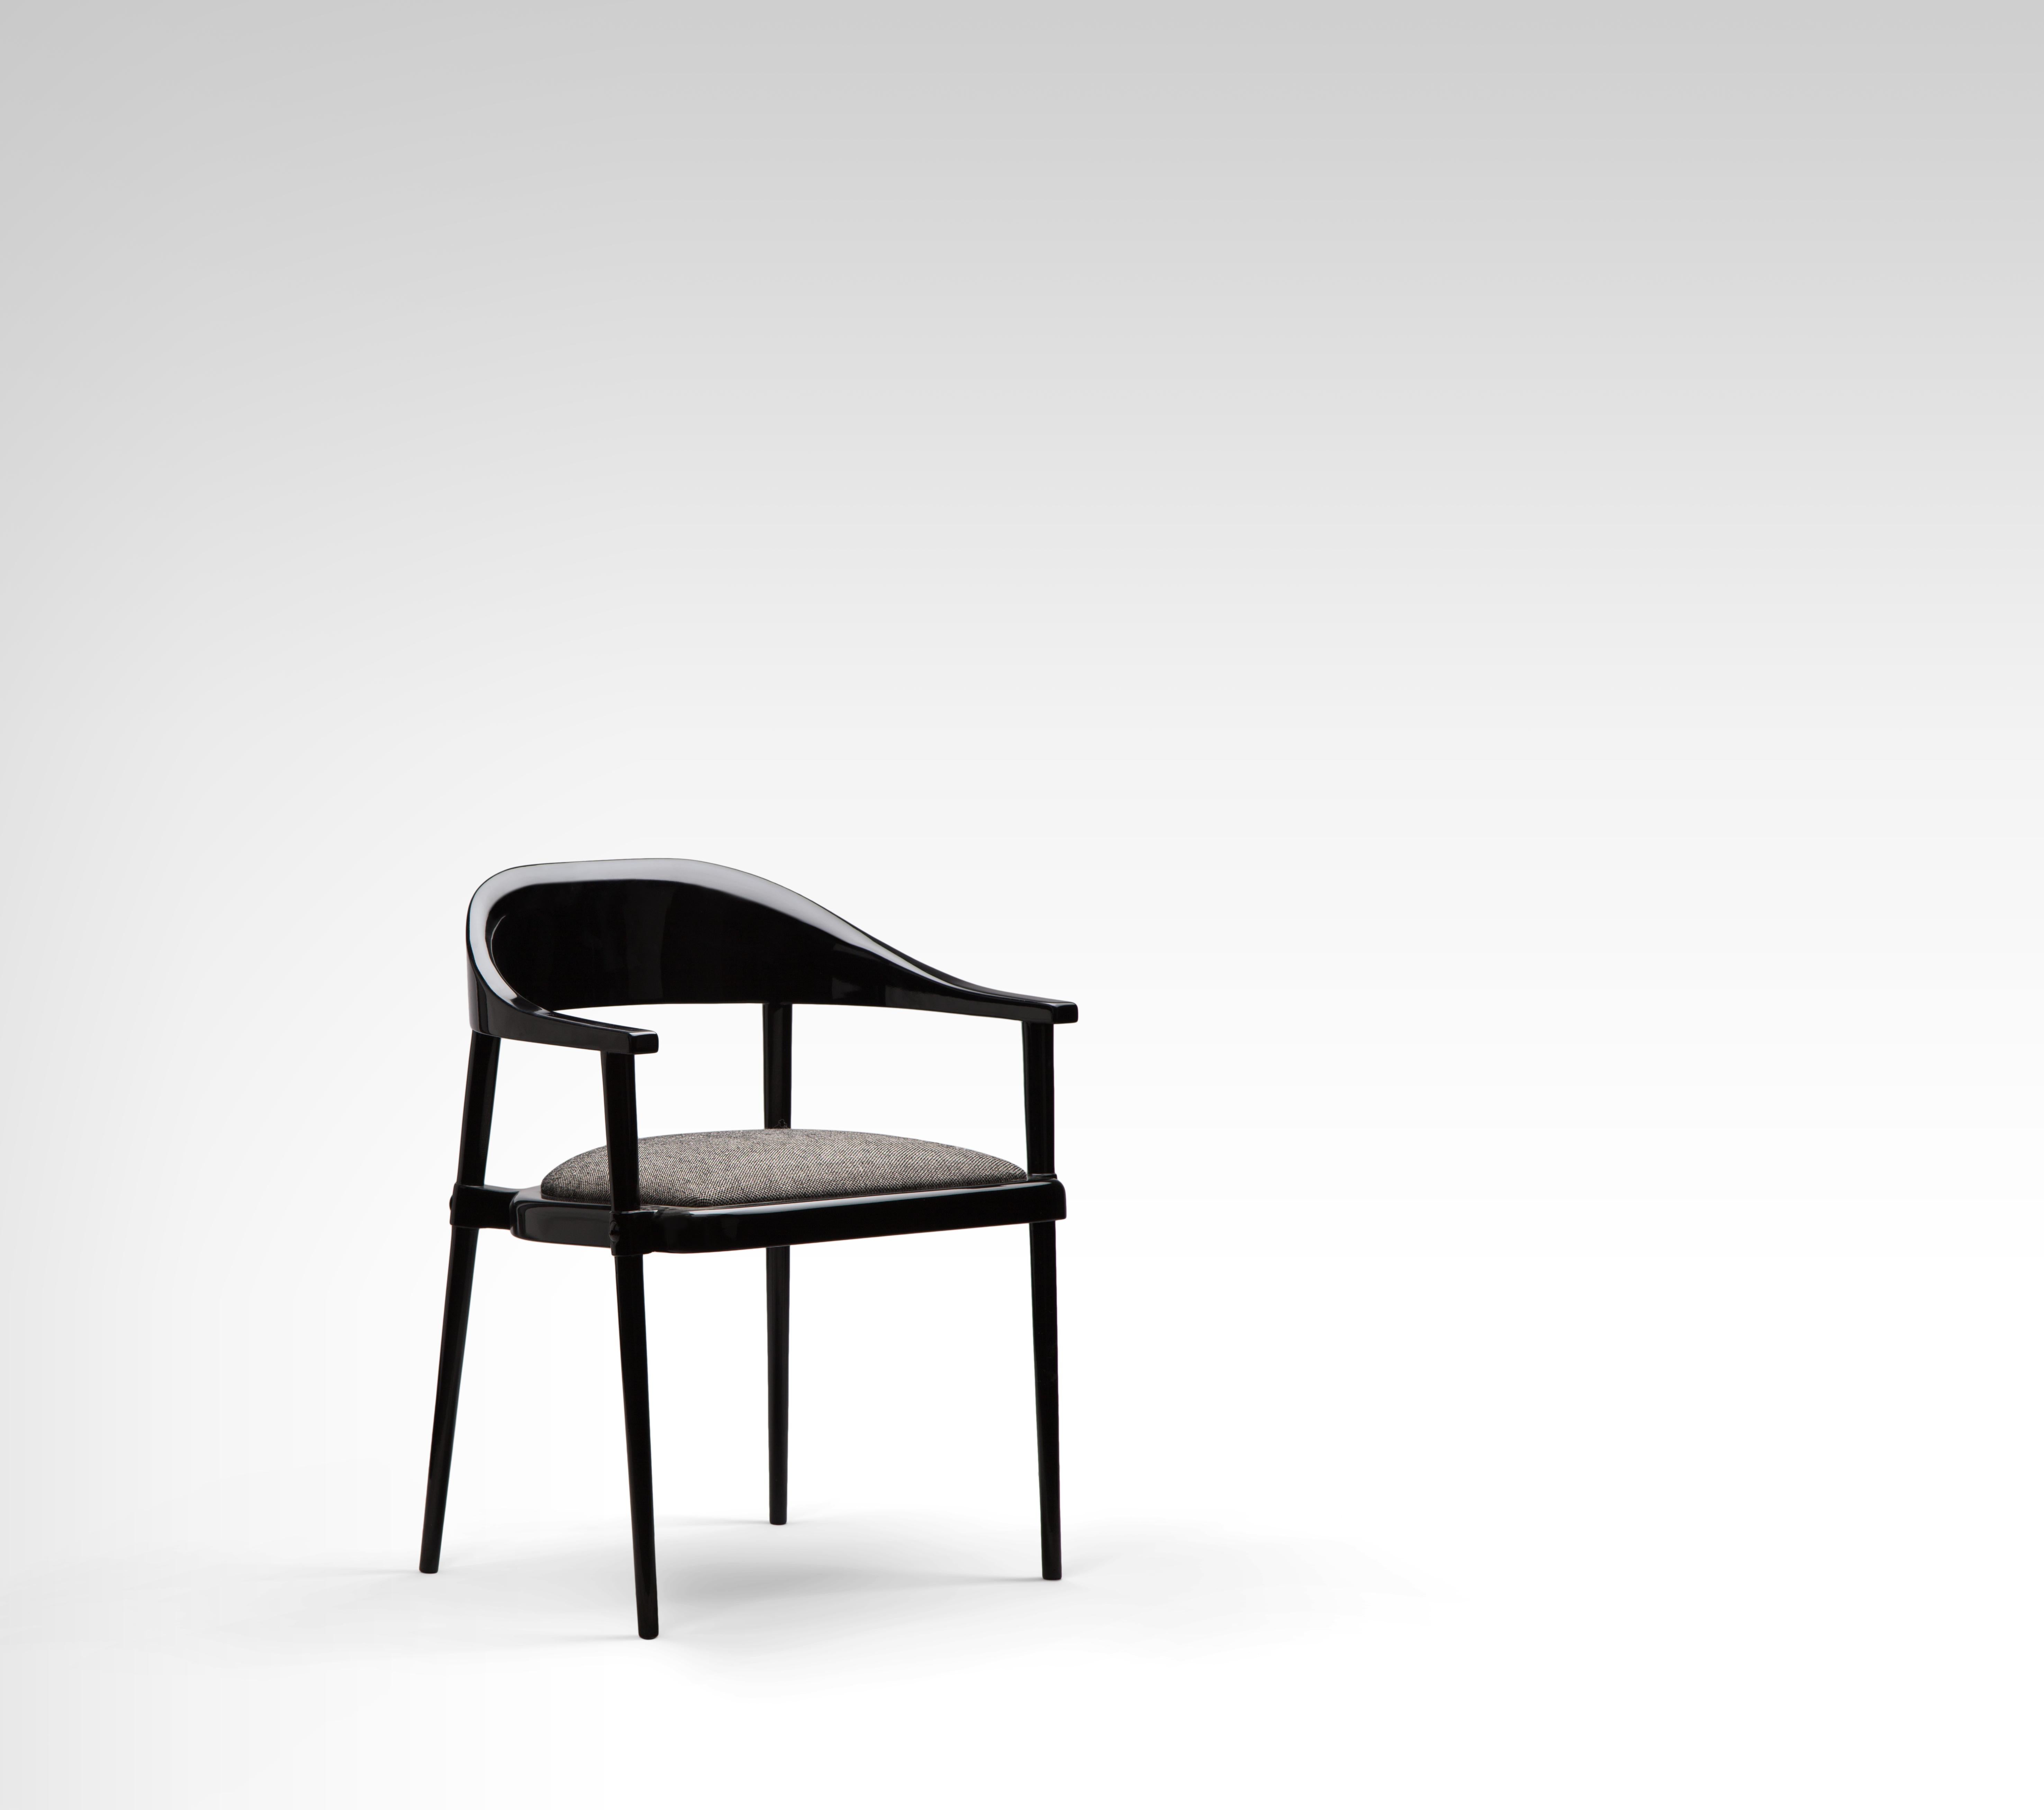 Luxuriöser, lackierter, eleganter schwarzer Esszimmer- und Sessel mit Polsterung. 
Unser Sleek Black Stuhl ist super bequem für ein angenehmes Essen und lange Gespräche danach! Sein geschwungenes, modernes Design sieht in glänzendem Schwarz